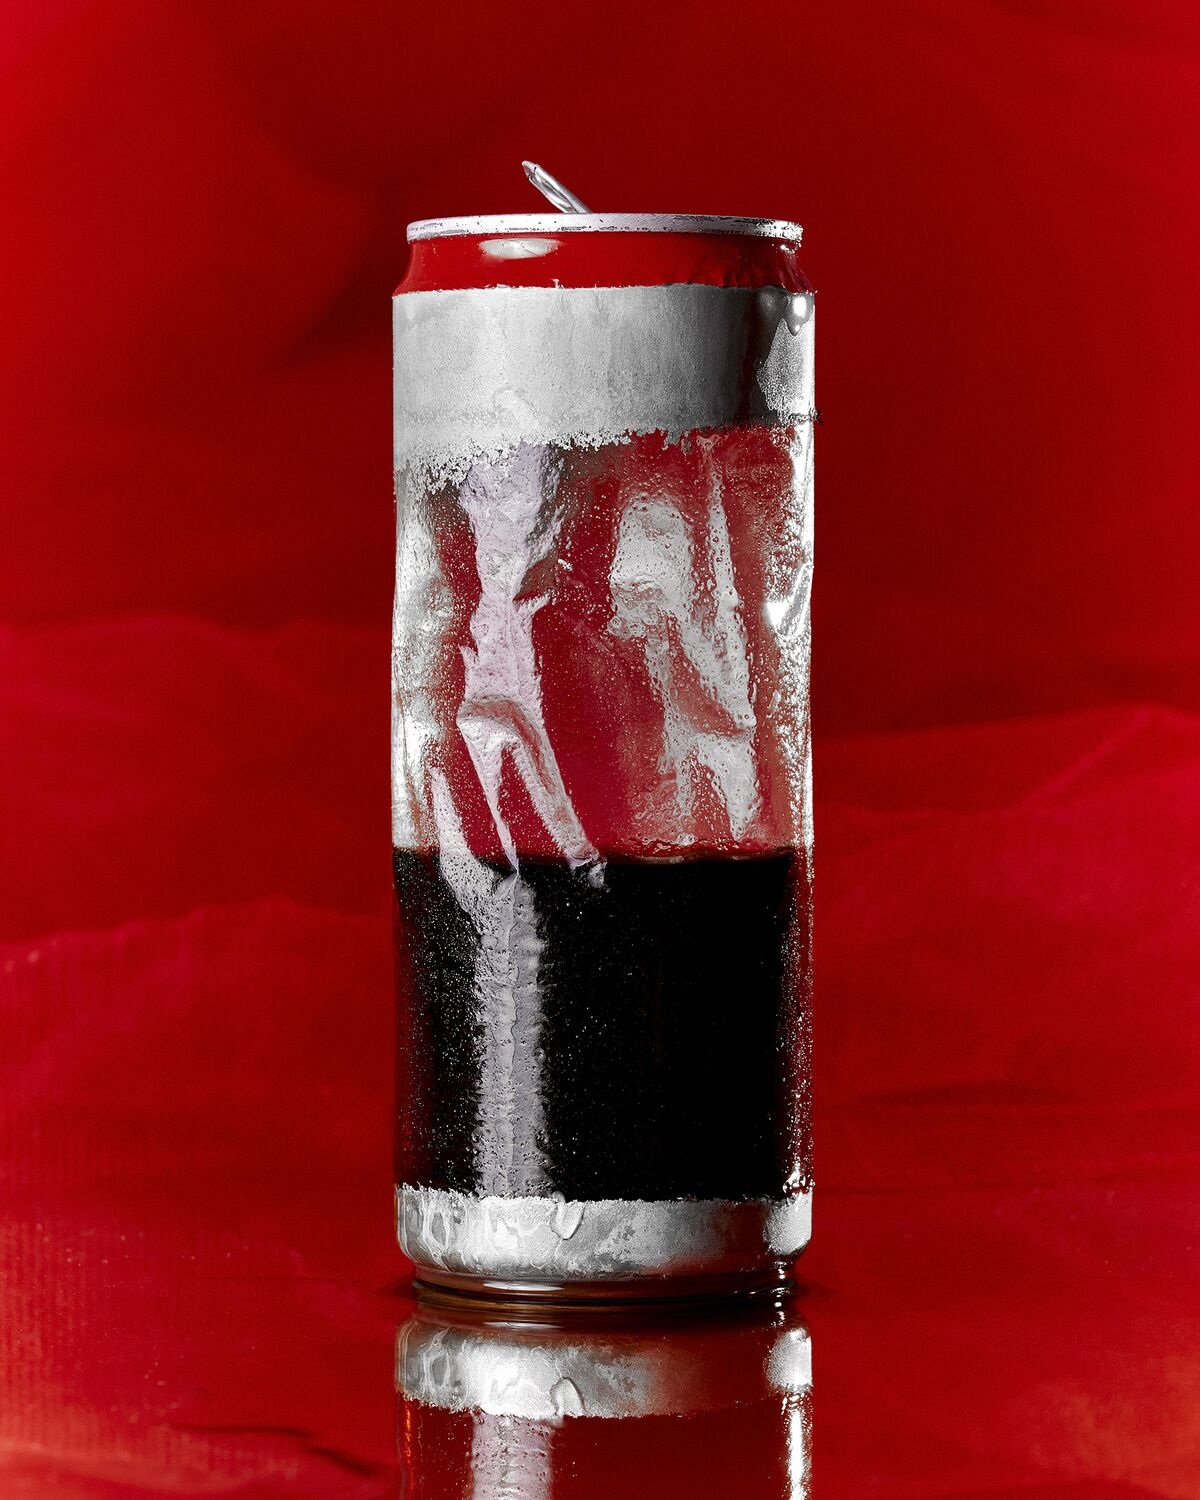 Hé lộ vụ trộm bí mật kinh doanh chấn động ở Coca-Cola - Ảnh 3.